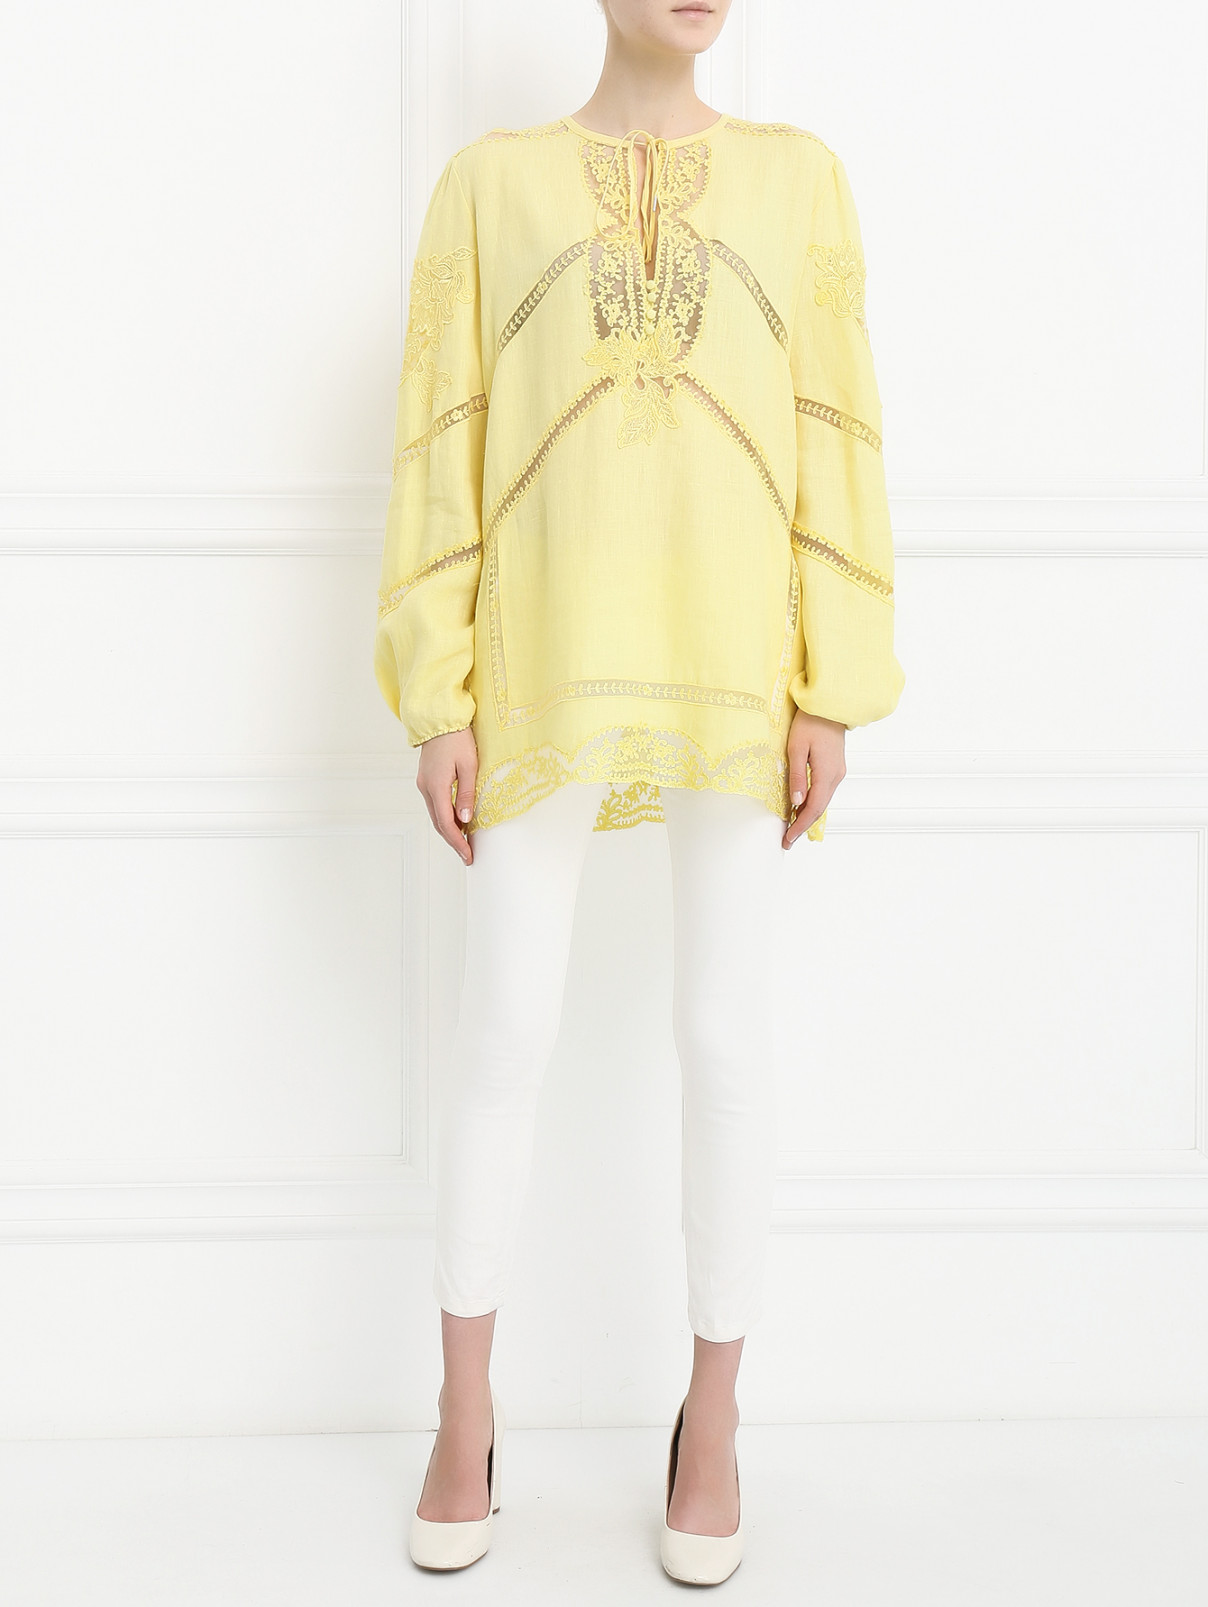 Блуза из льна с полупрозрачными вставками Ermanno Scervino  –  Модель Общий вид  – Цвет:  Желтый